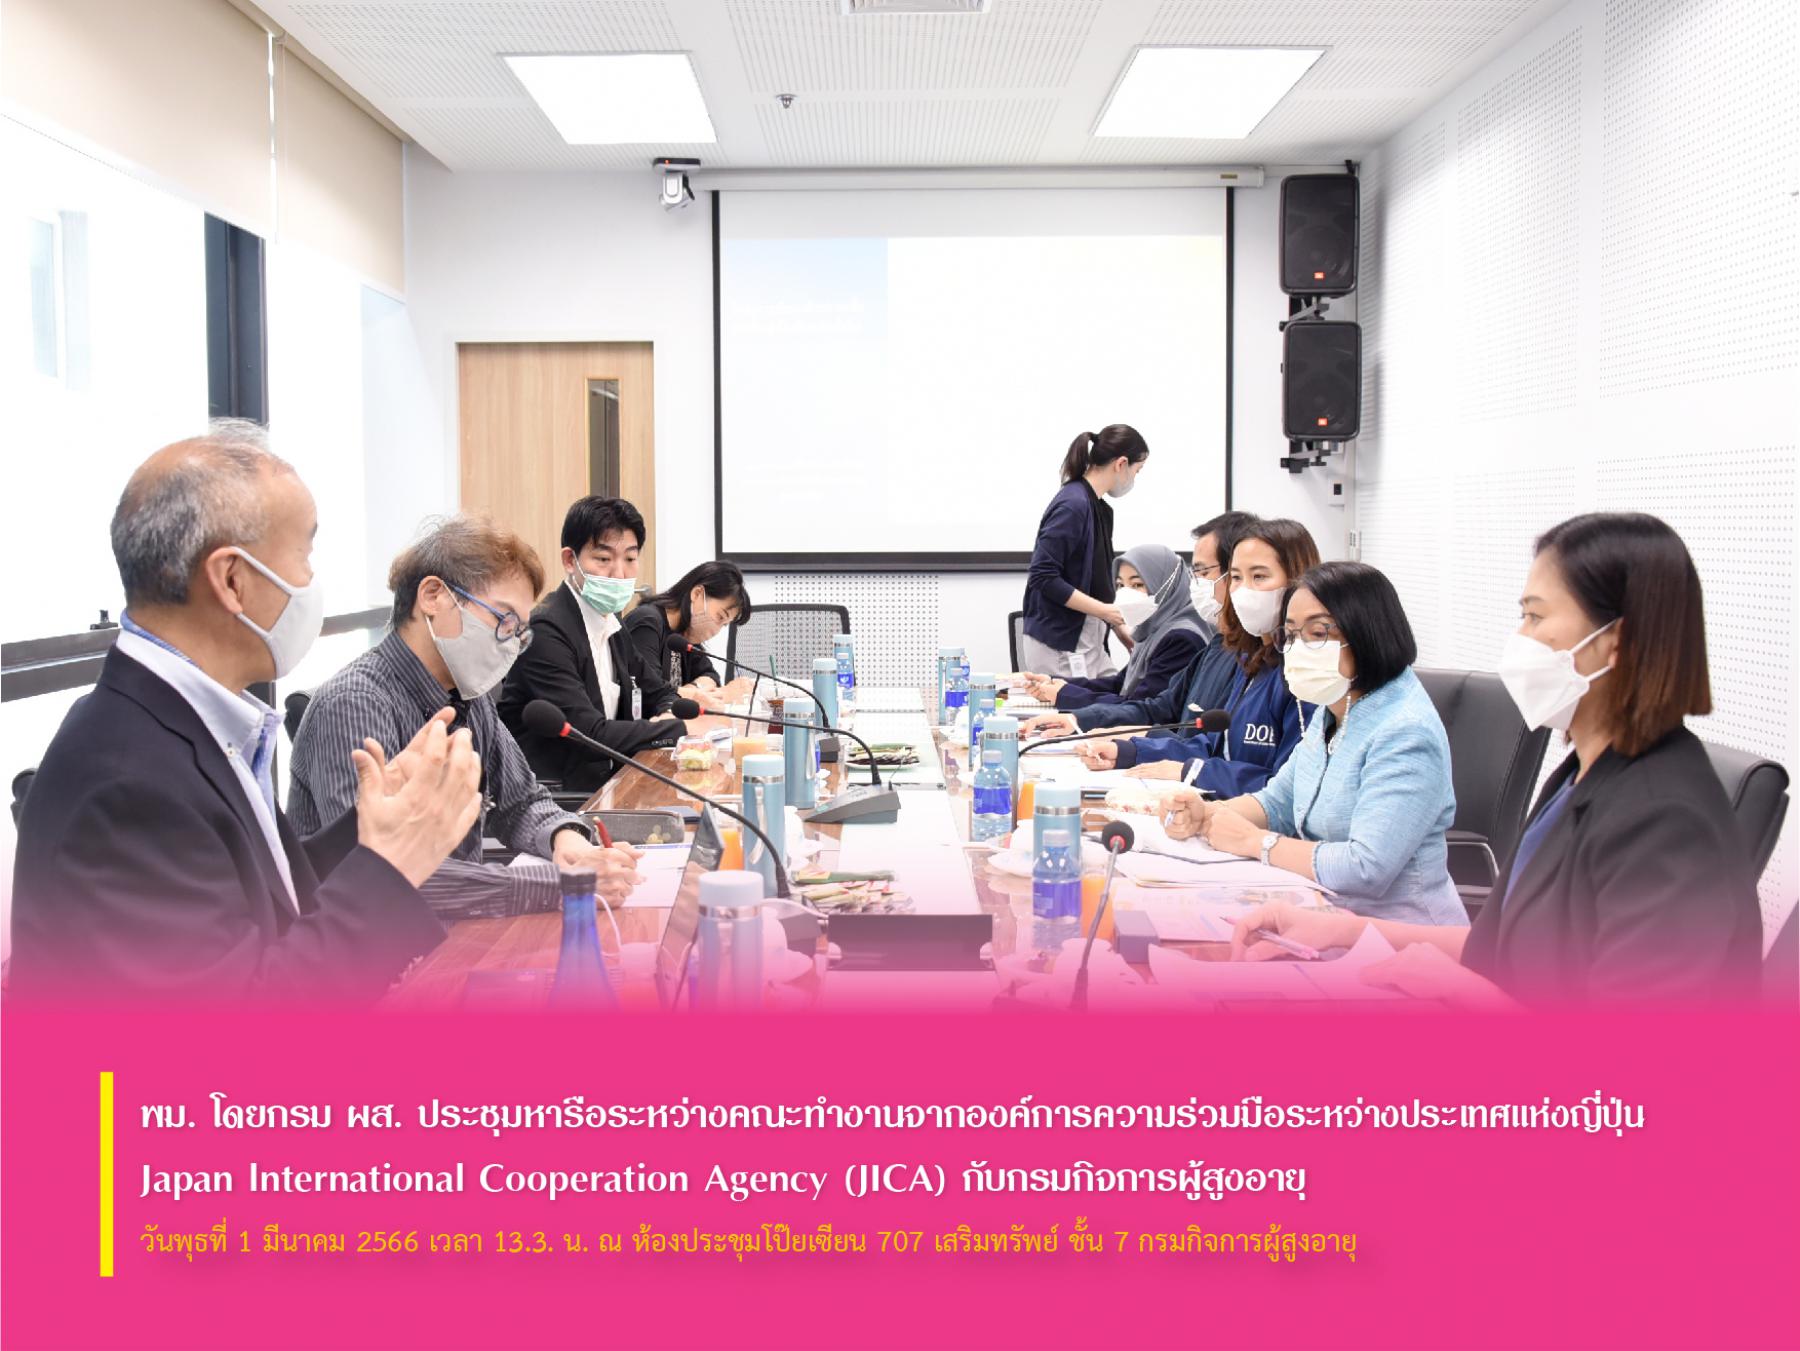 พม. โดย กรม ผส. ประชุมหารือระหว่างคณะทำงานจากองค์การความร่วมมือระหว่างประเทศแห่งญี่ปุ่น Japan International Cooperation Agency (JICA) กับกรมกิจการผู้สูงอายุ